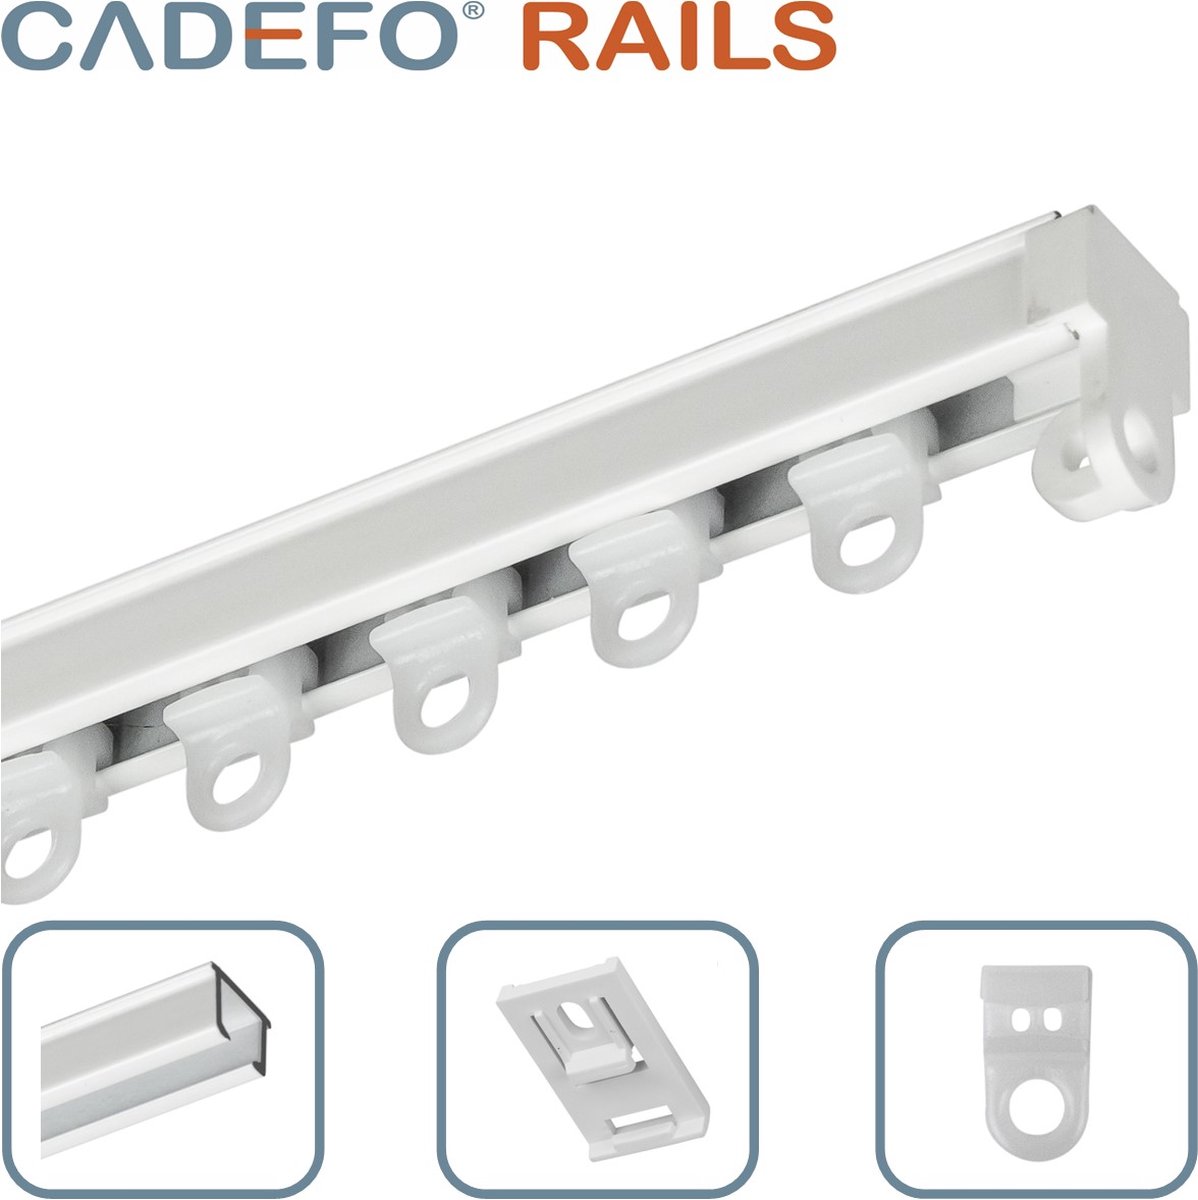 CADEFO RAILS (551 - 600 cm) Gordijnrails - Compleet op maat! - UIT 1 STUK - Leverbaar tot 6 meter - Plafondbevestiging - Lengte 567 cm